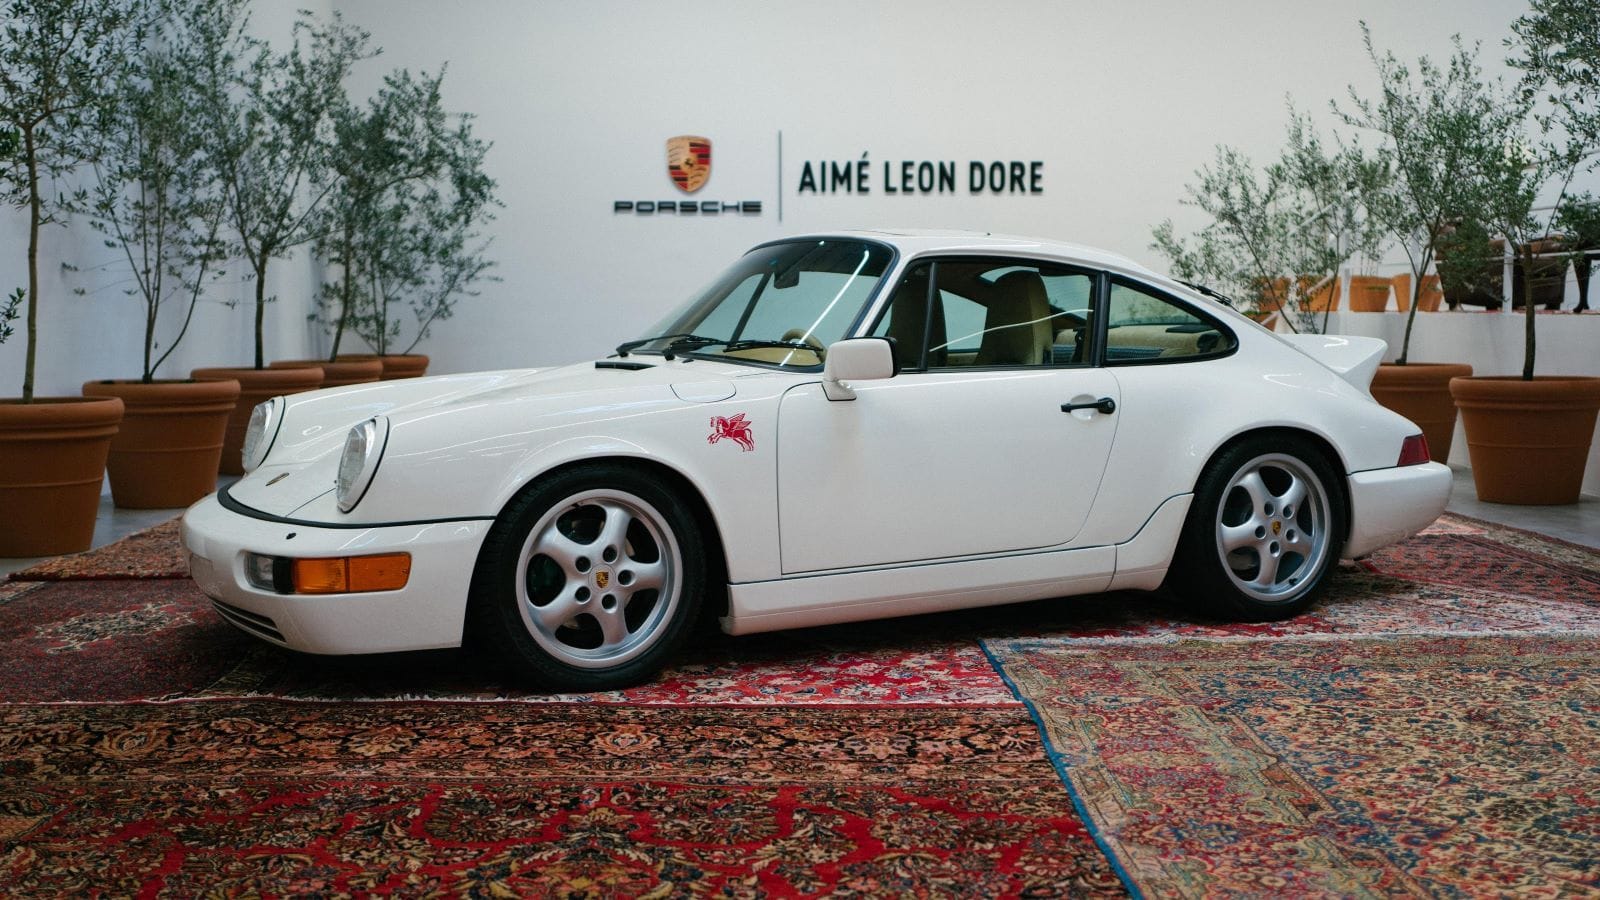 Restored And Personalized Aimé Leon Dore Porsche 964 Looks